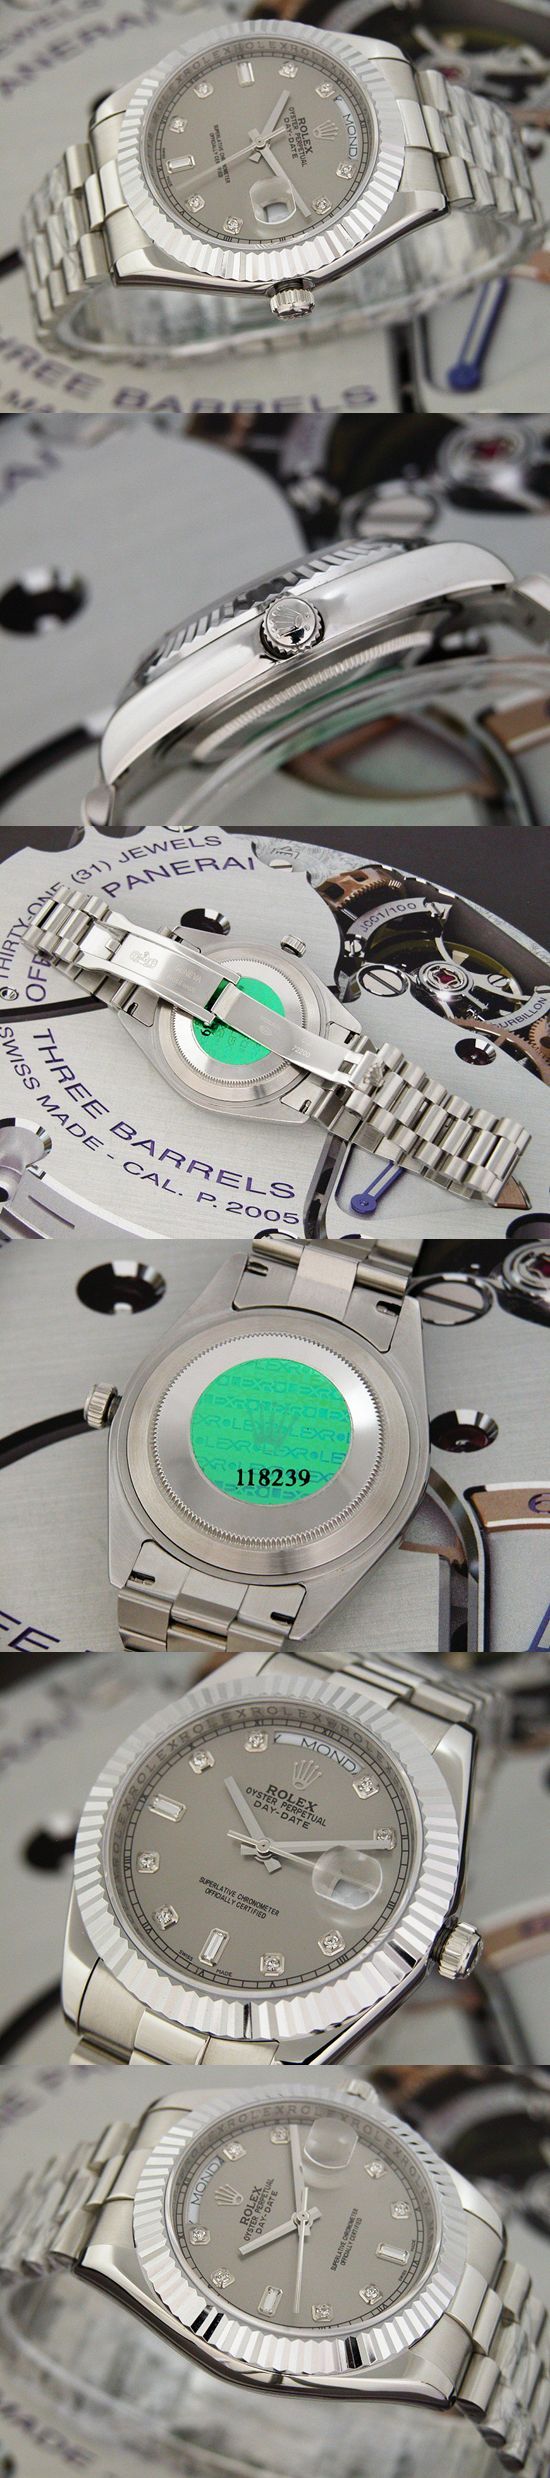 おしゃれなブランド時計がロレックス-デイデイト-ROLEX-118239-96-男性用を提供します.